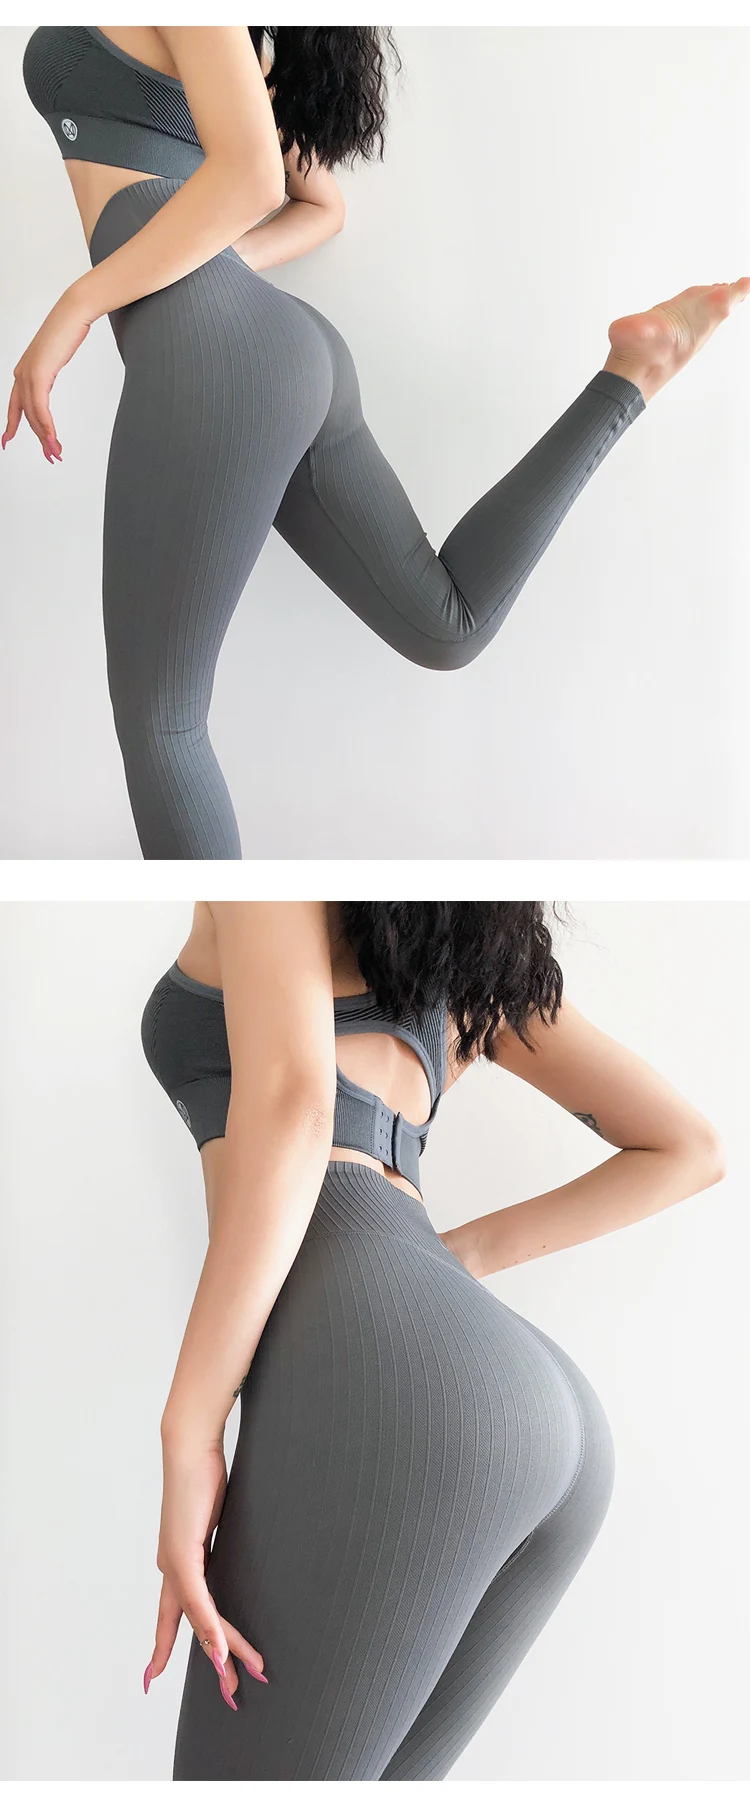 Imlario полосатые бесшовные леггинсы для фитнеса, эластичные колготки для занятий спортом, женские ребристые компрессионные штаны для йоги, бодибилдинга